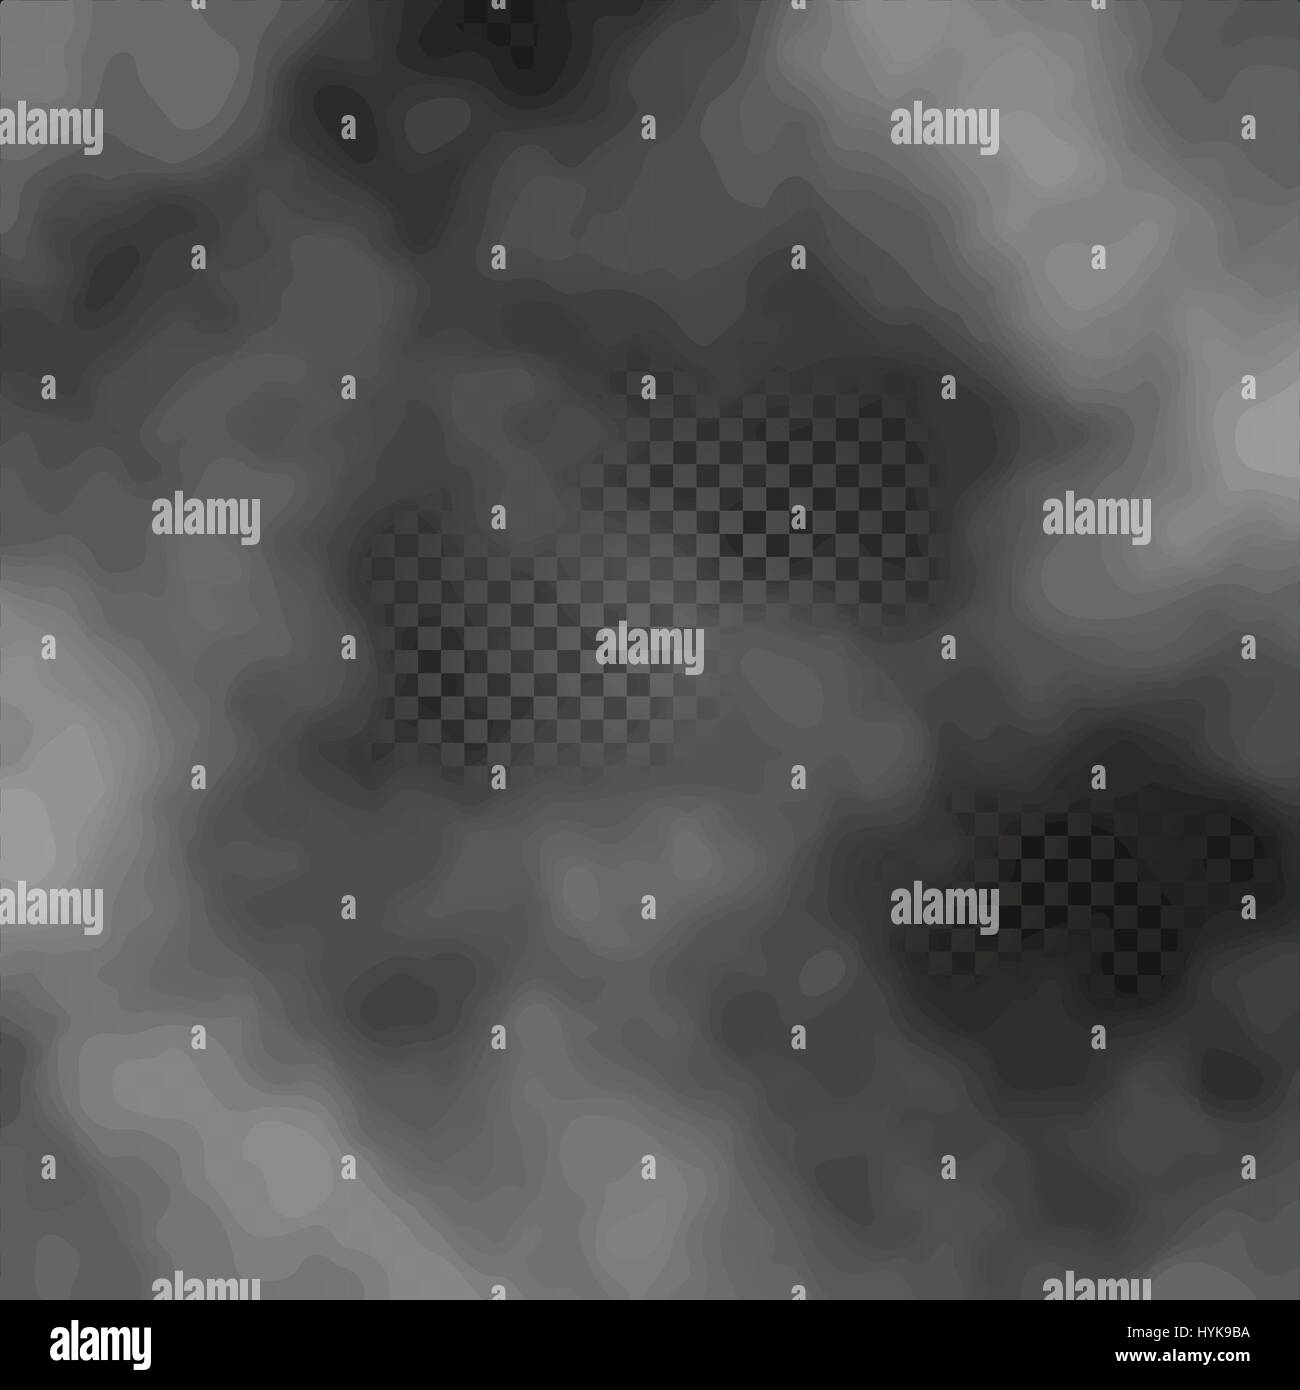 Niebla o humo transparente aislados efecto especial sobre fondo oscuro fondo cuadriculado misty ilustración vectorial Ilustración del Vector